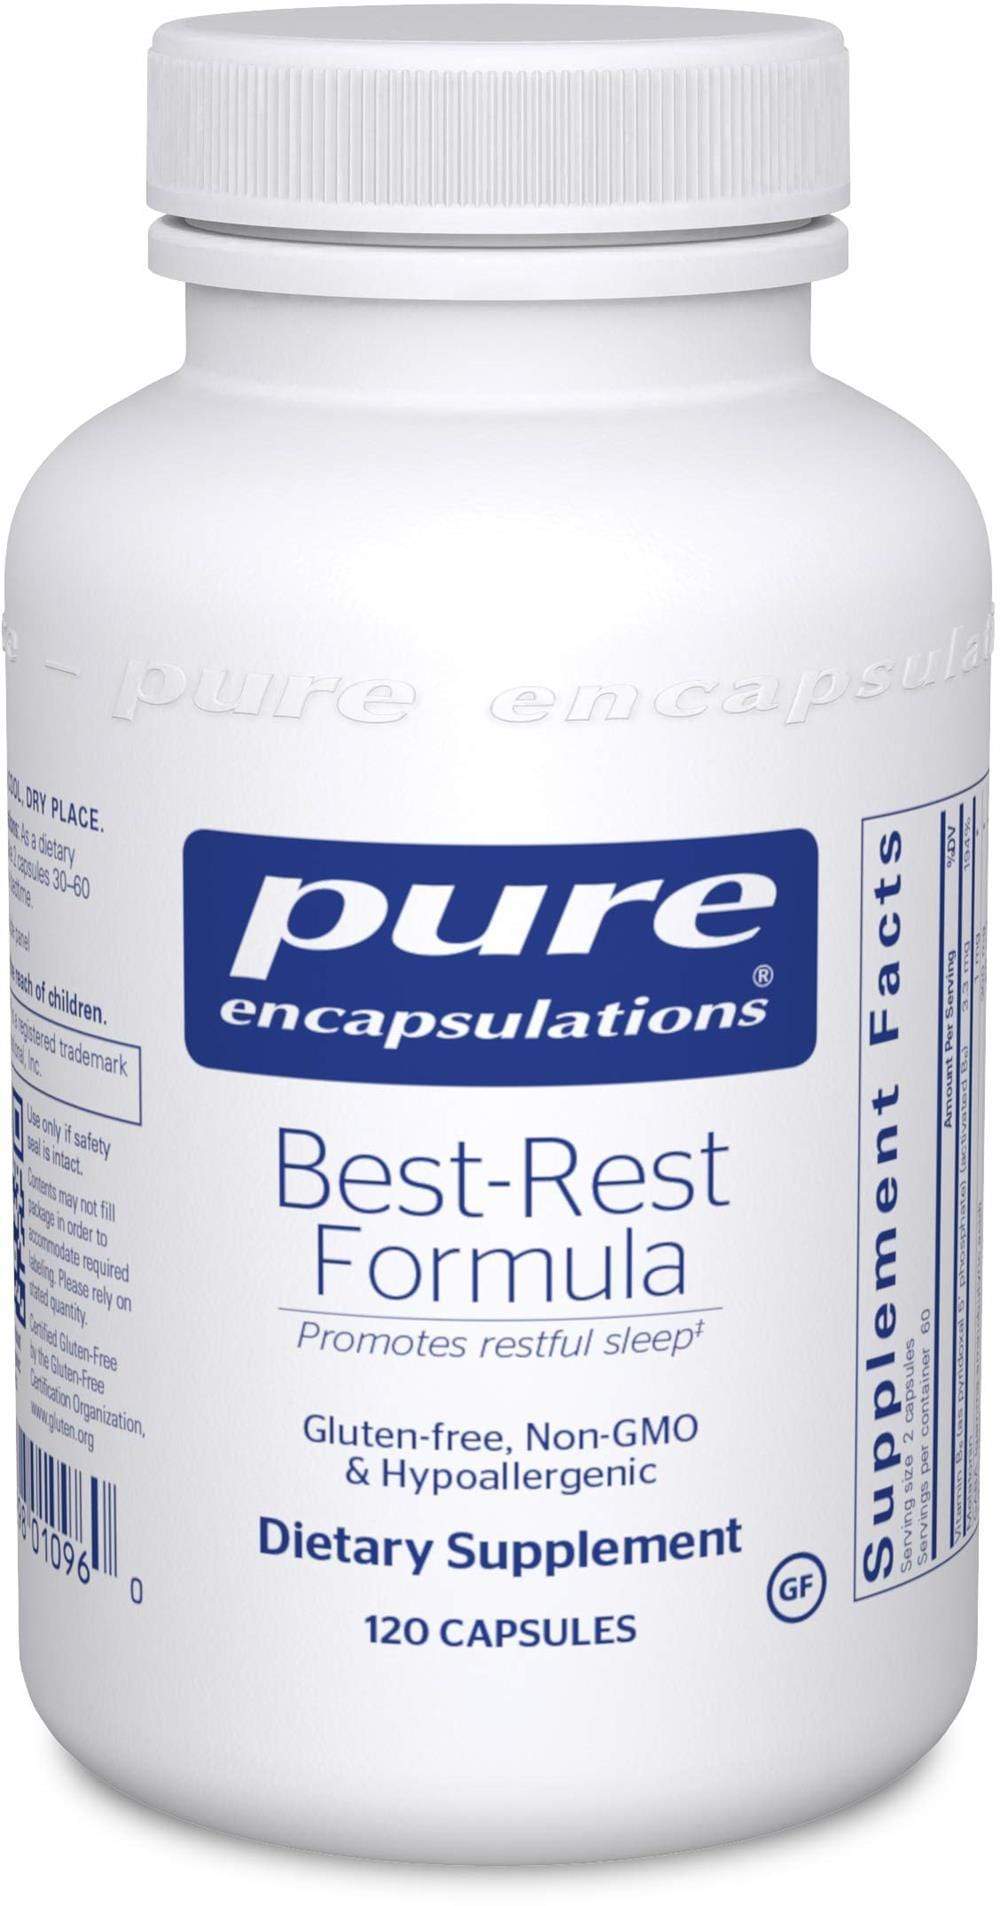 Pure Encapsulations Best-Rest Formula -- 60 Capsules 120 capsules